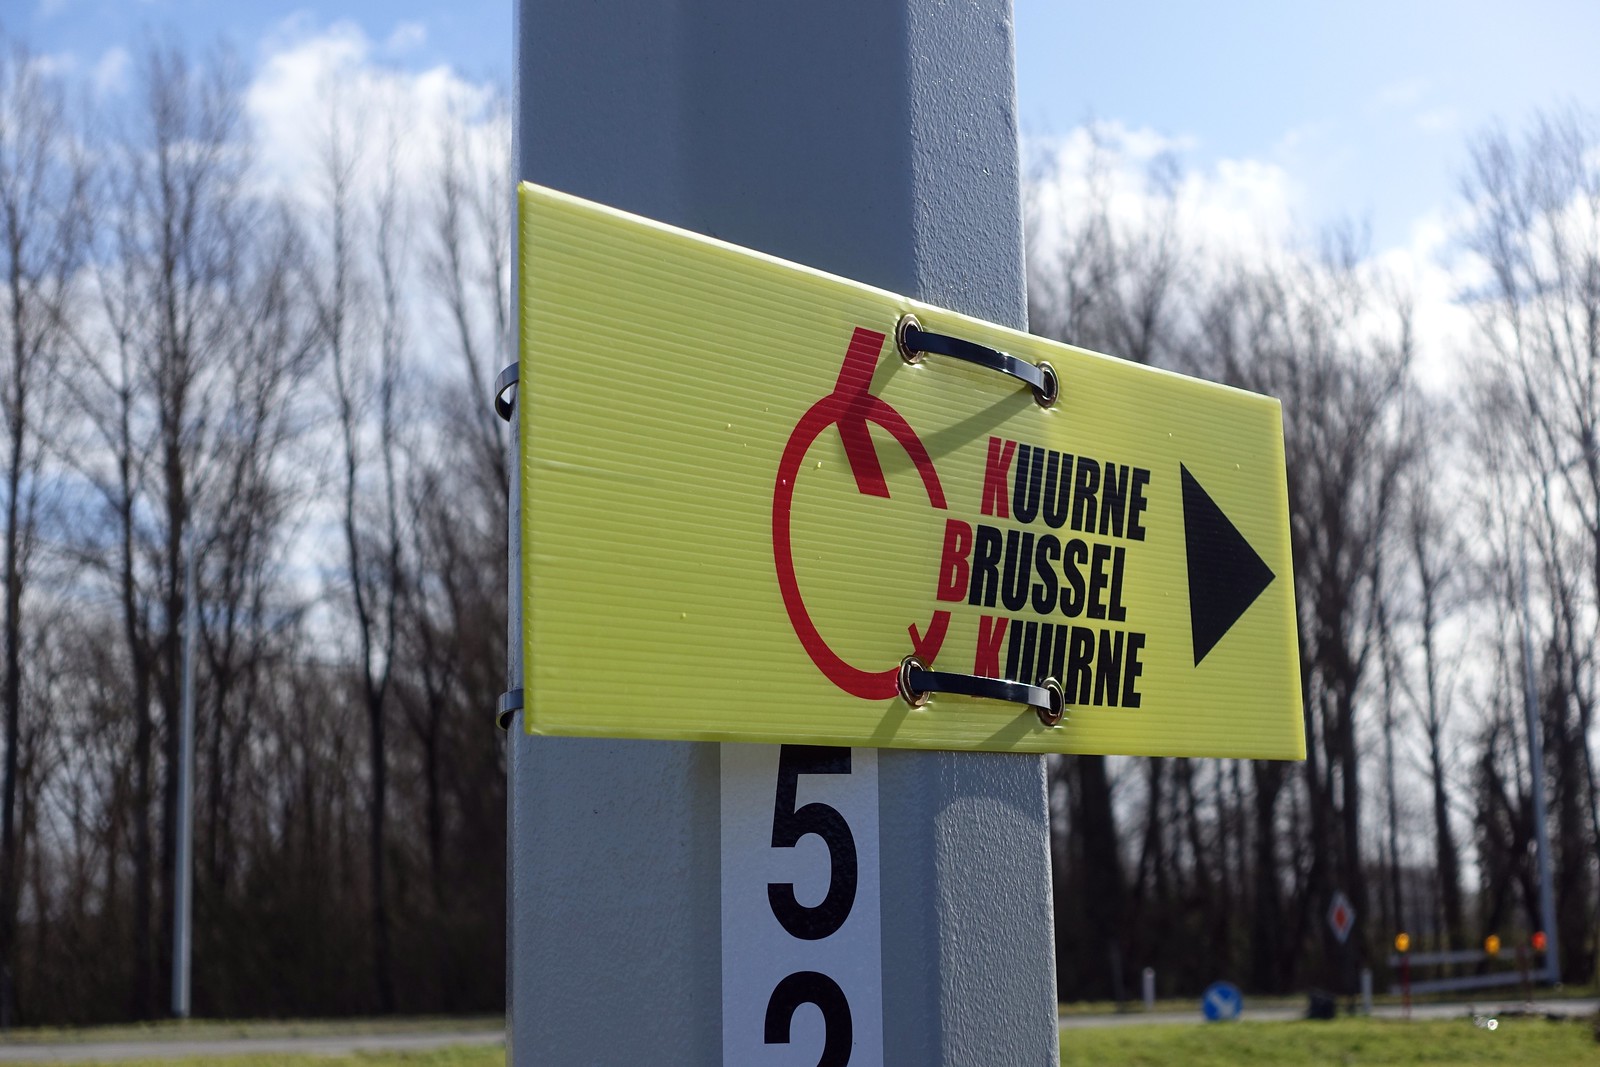 Kuurne Brussels Kuurne 2015 - adambowie.com